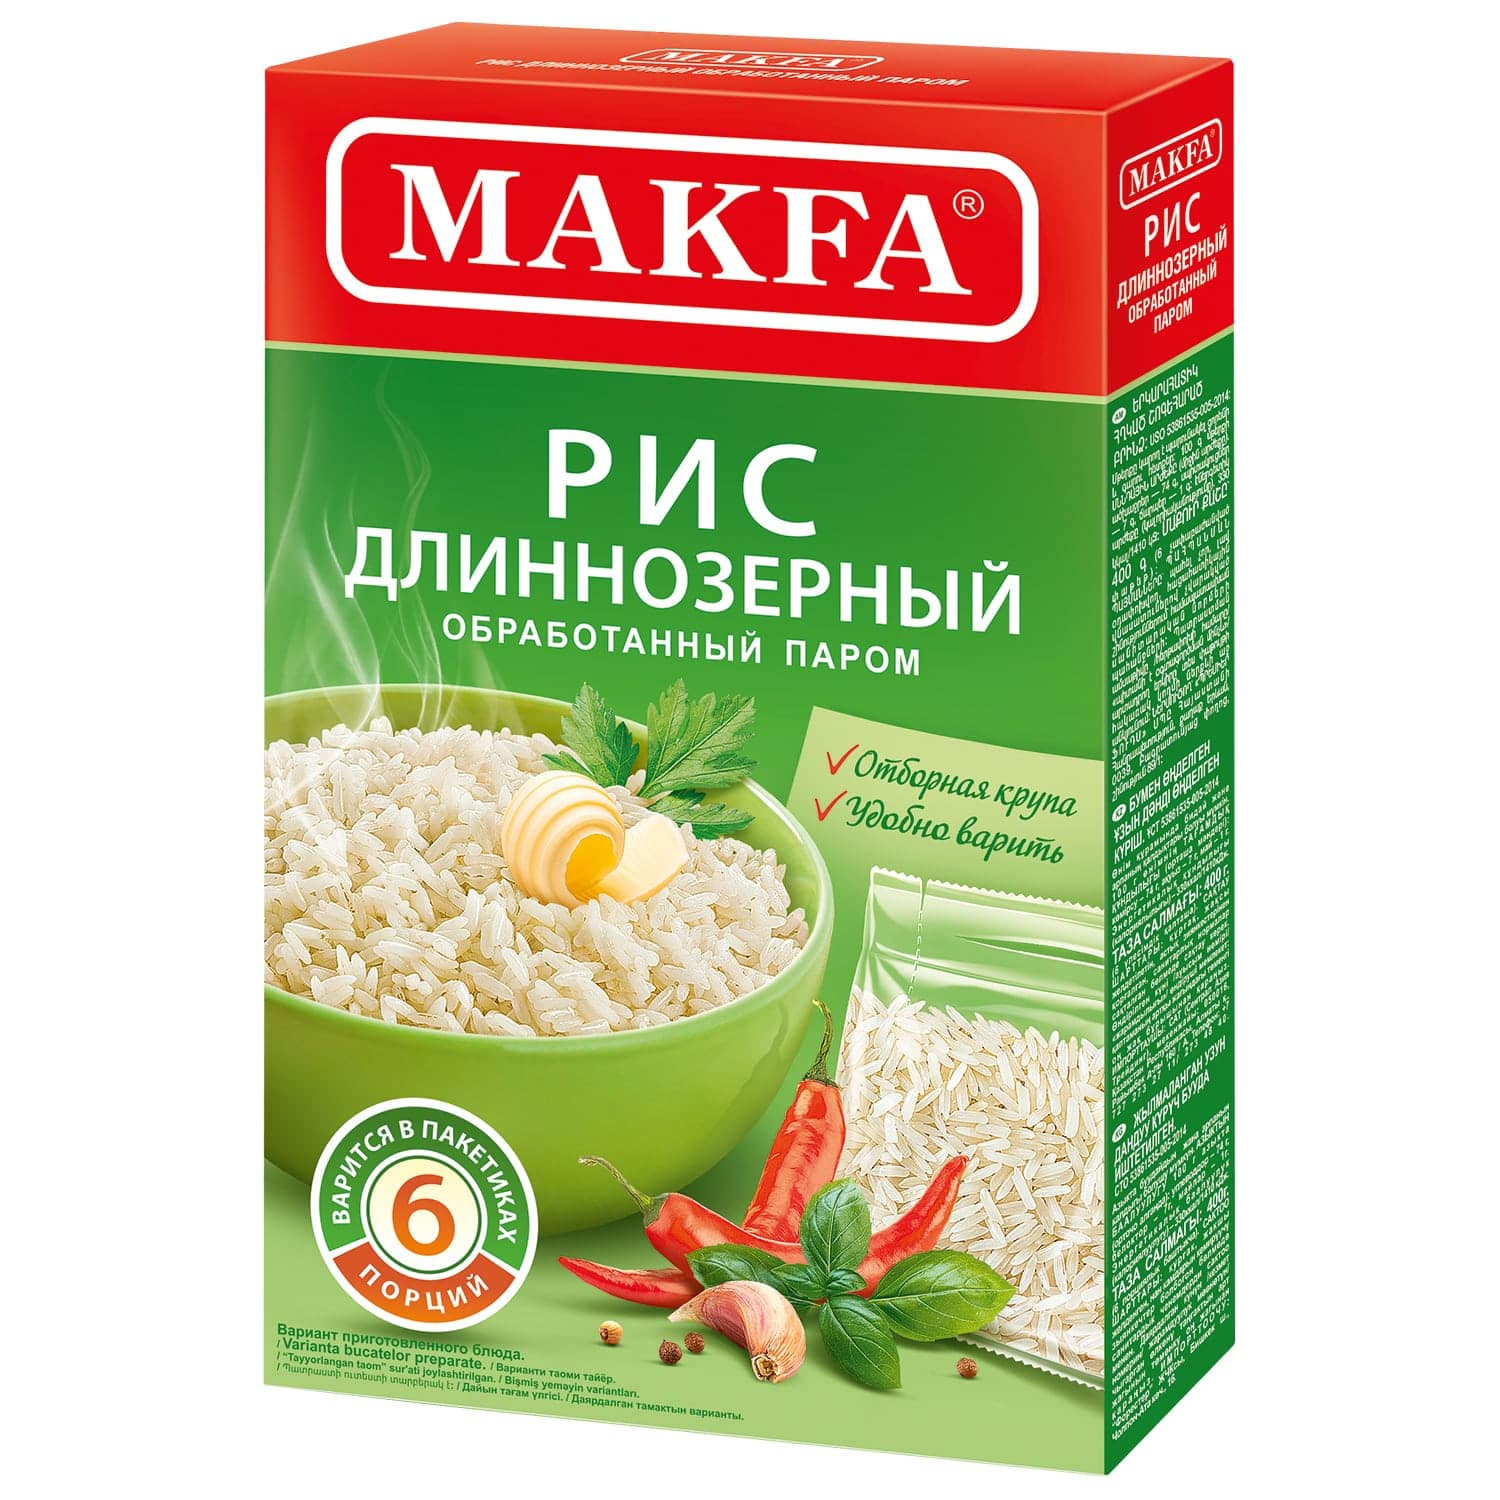 Рис длиннозерный пропаренный MAKFA в пакетиках для варки